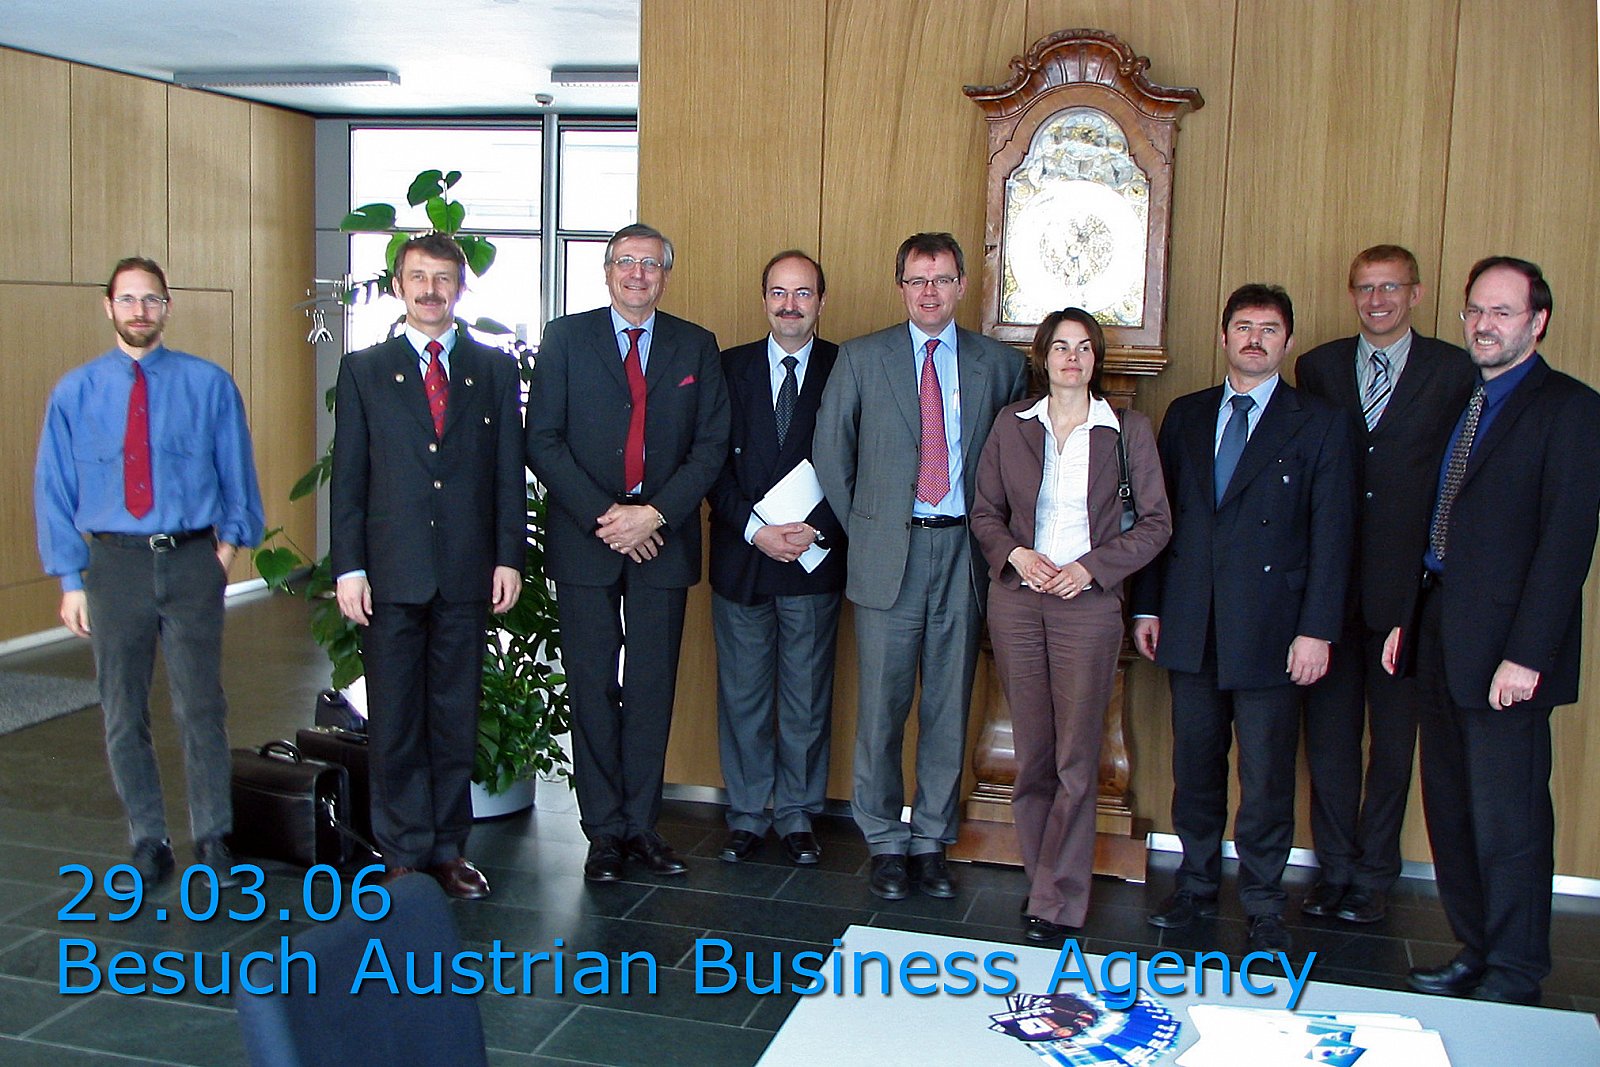 Besuch durch die Austrian Business Agency